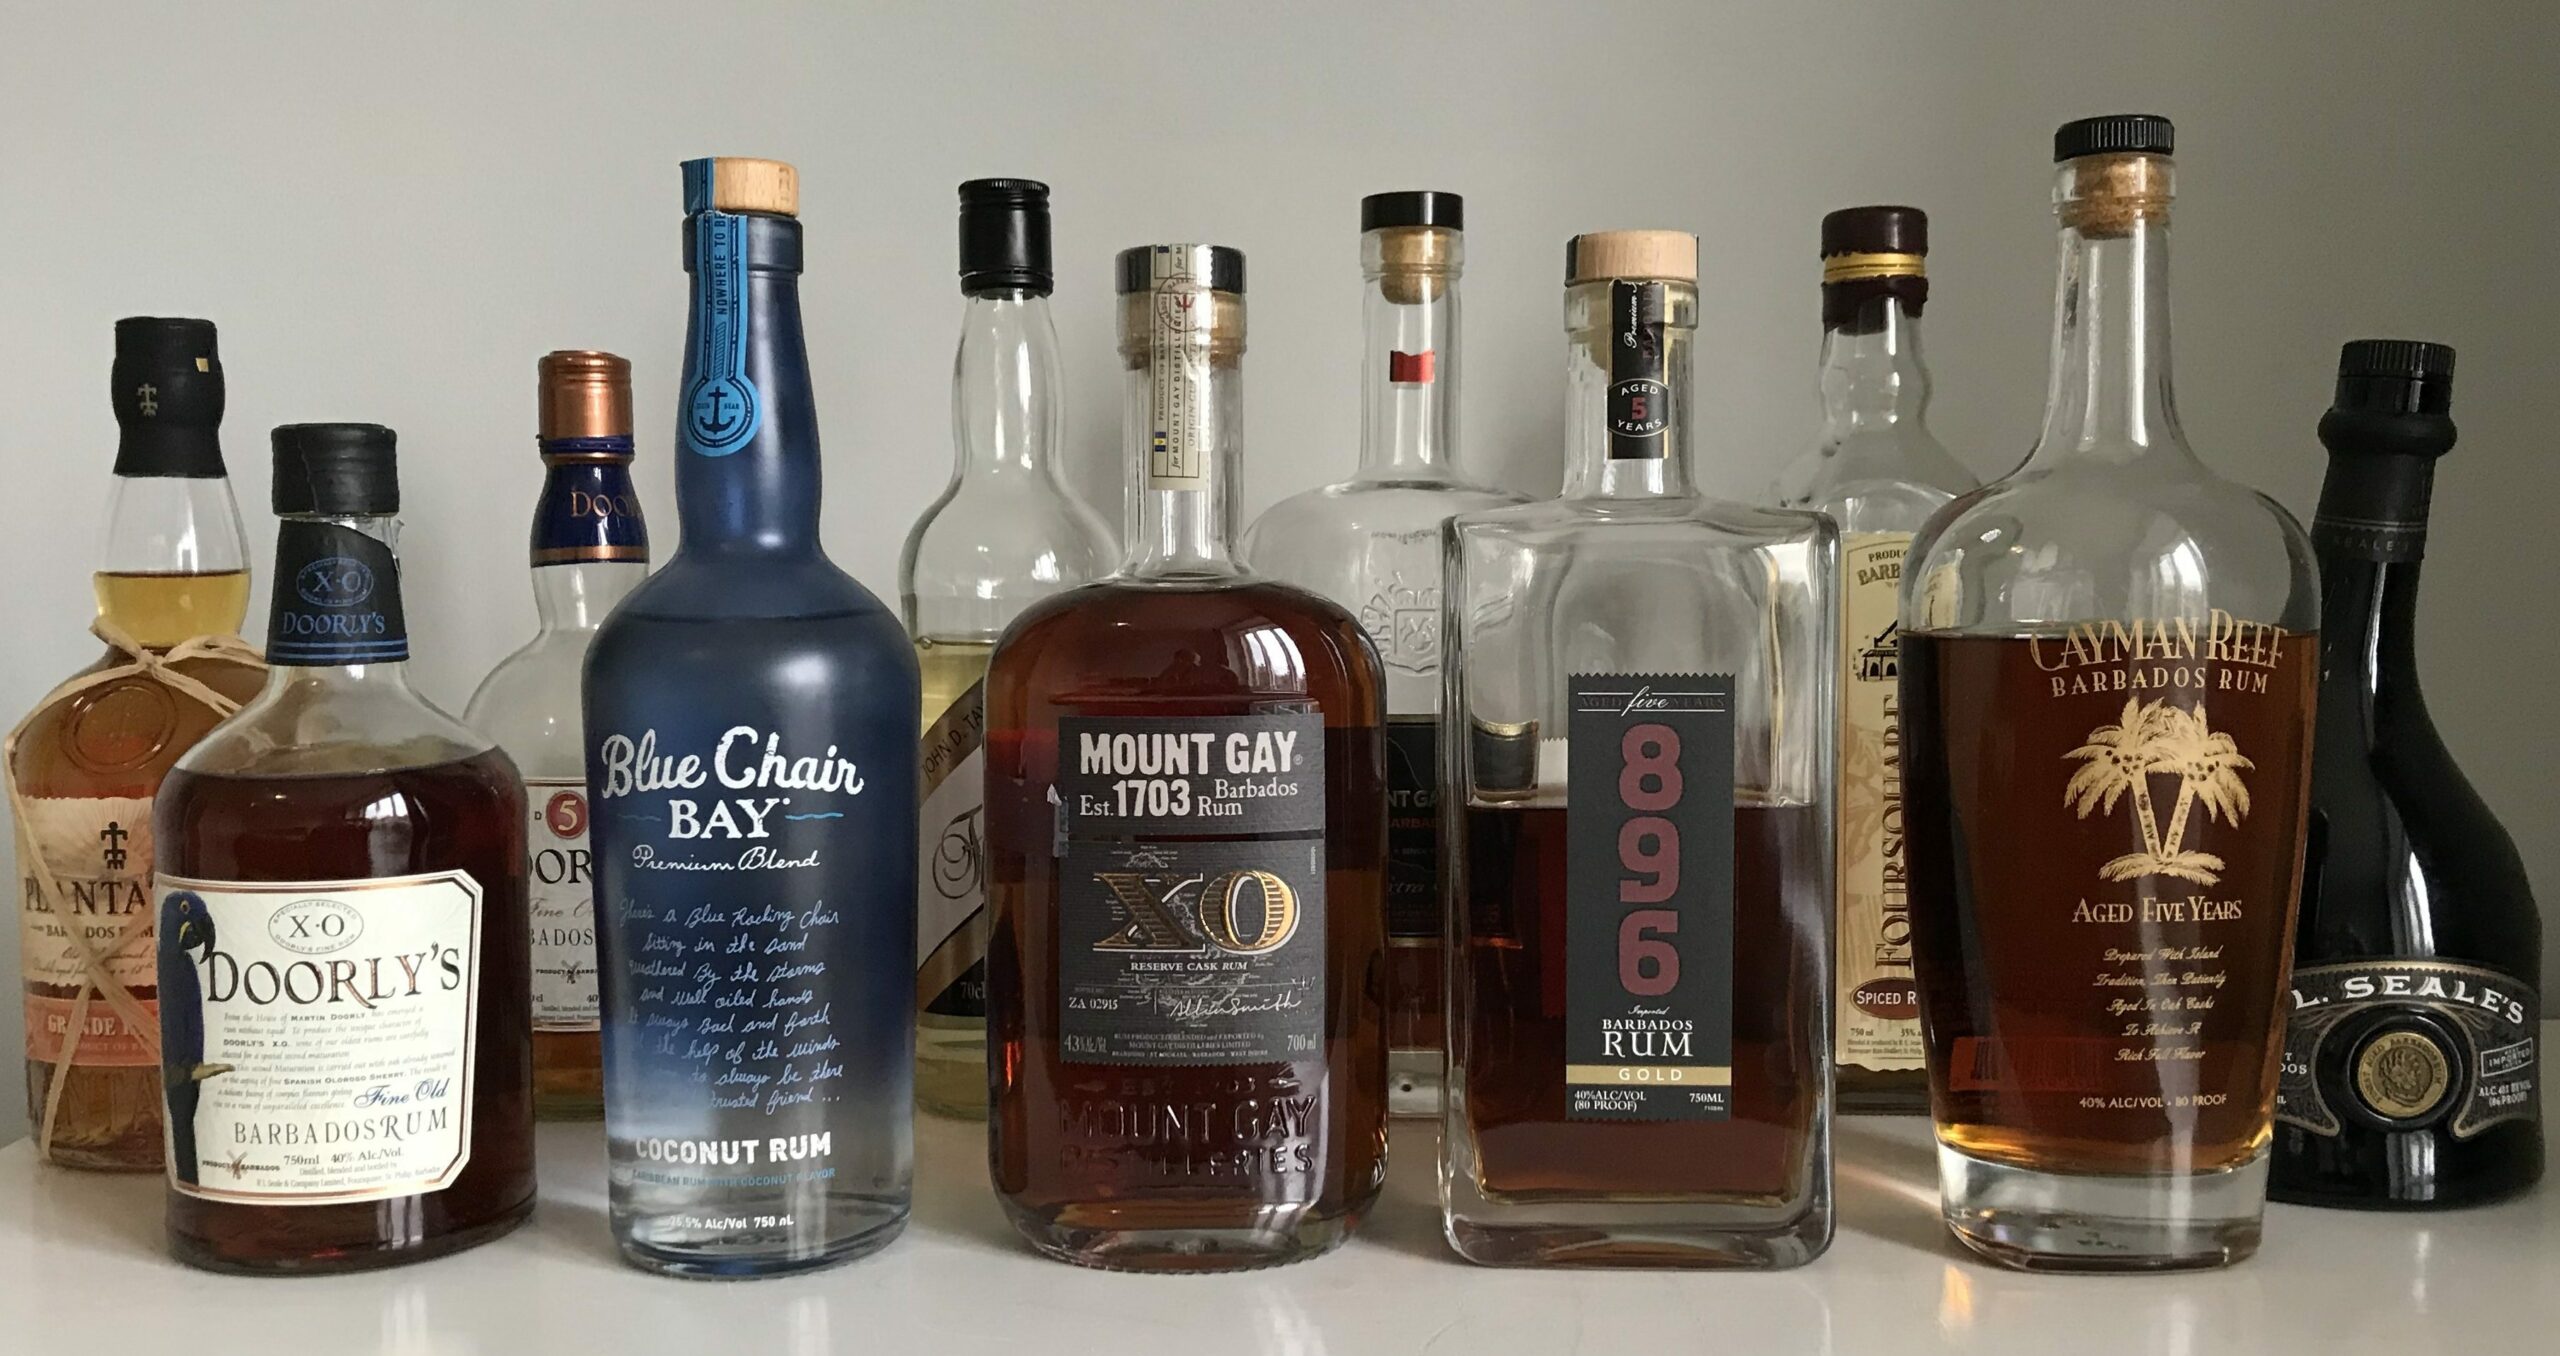 Barbados Rum - niekoľko známych značiek bajan rumov